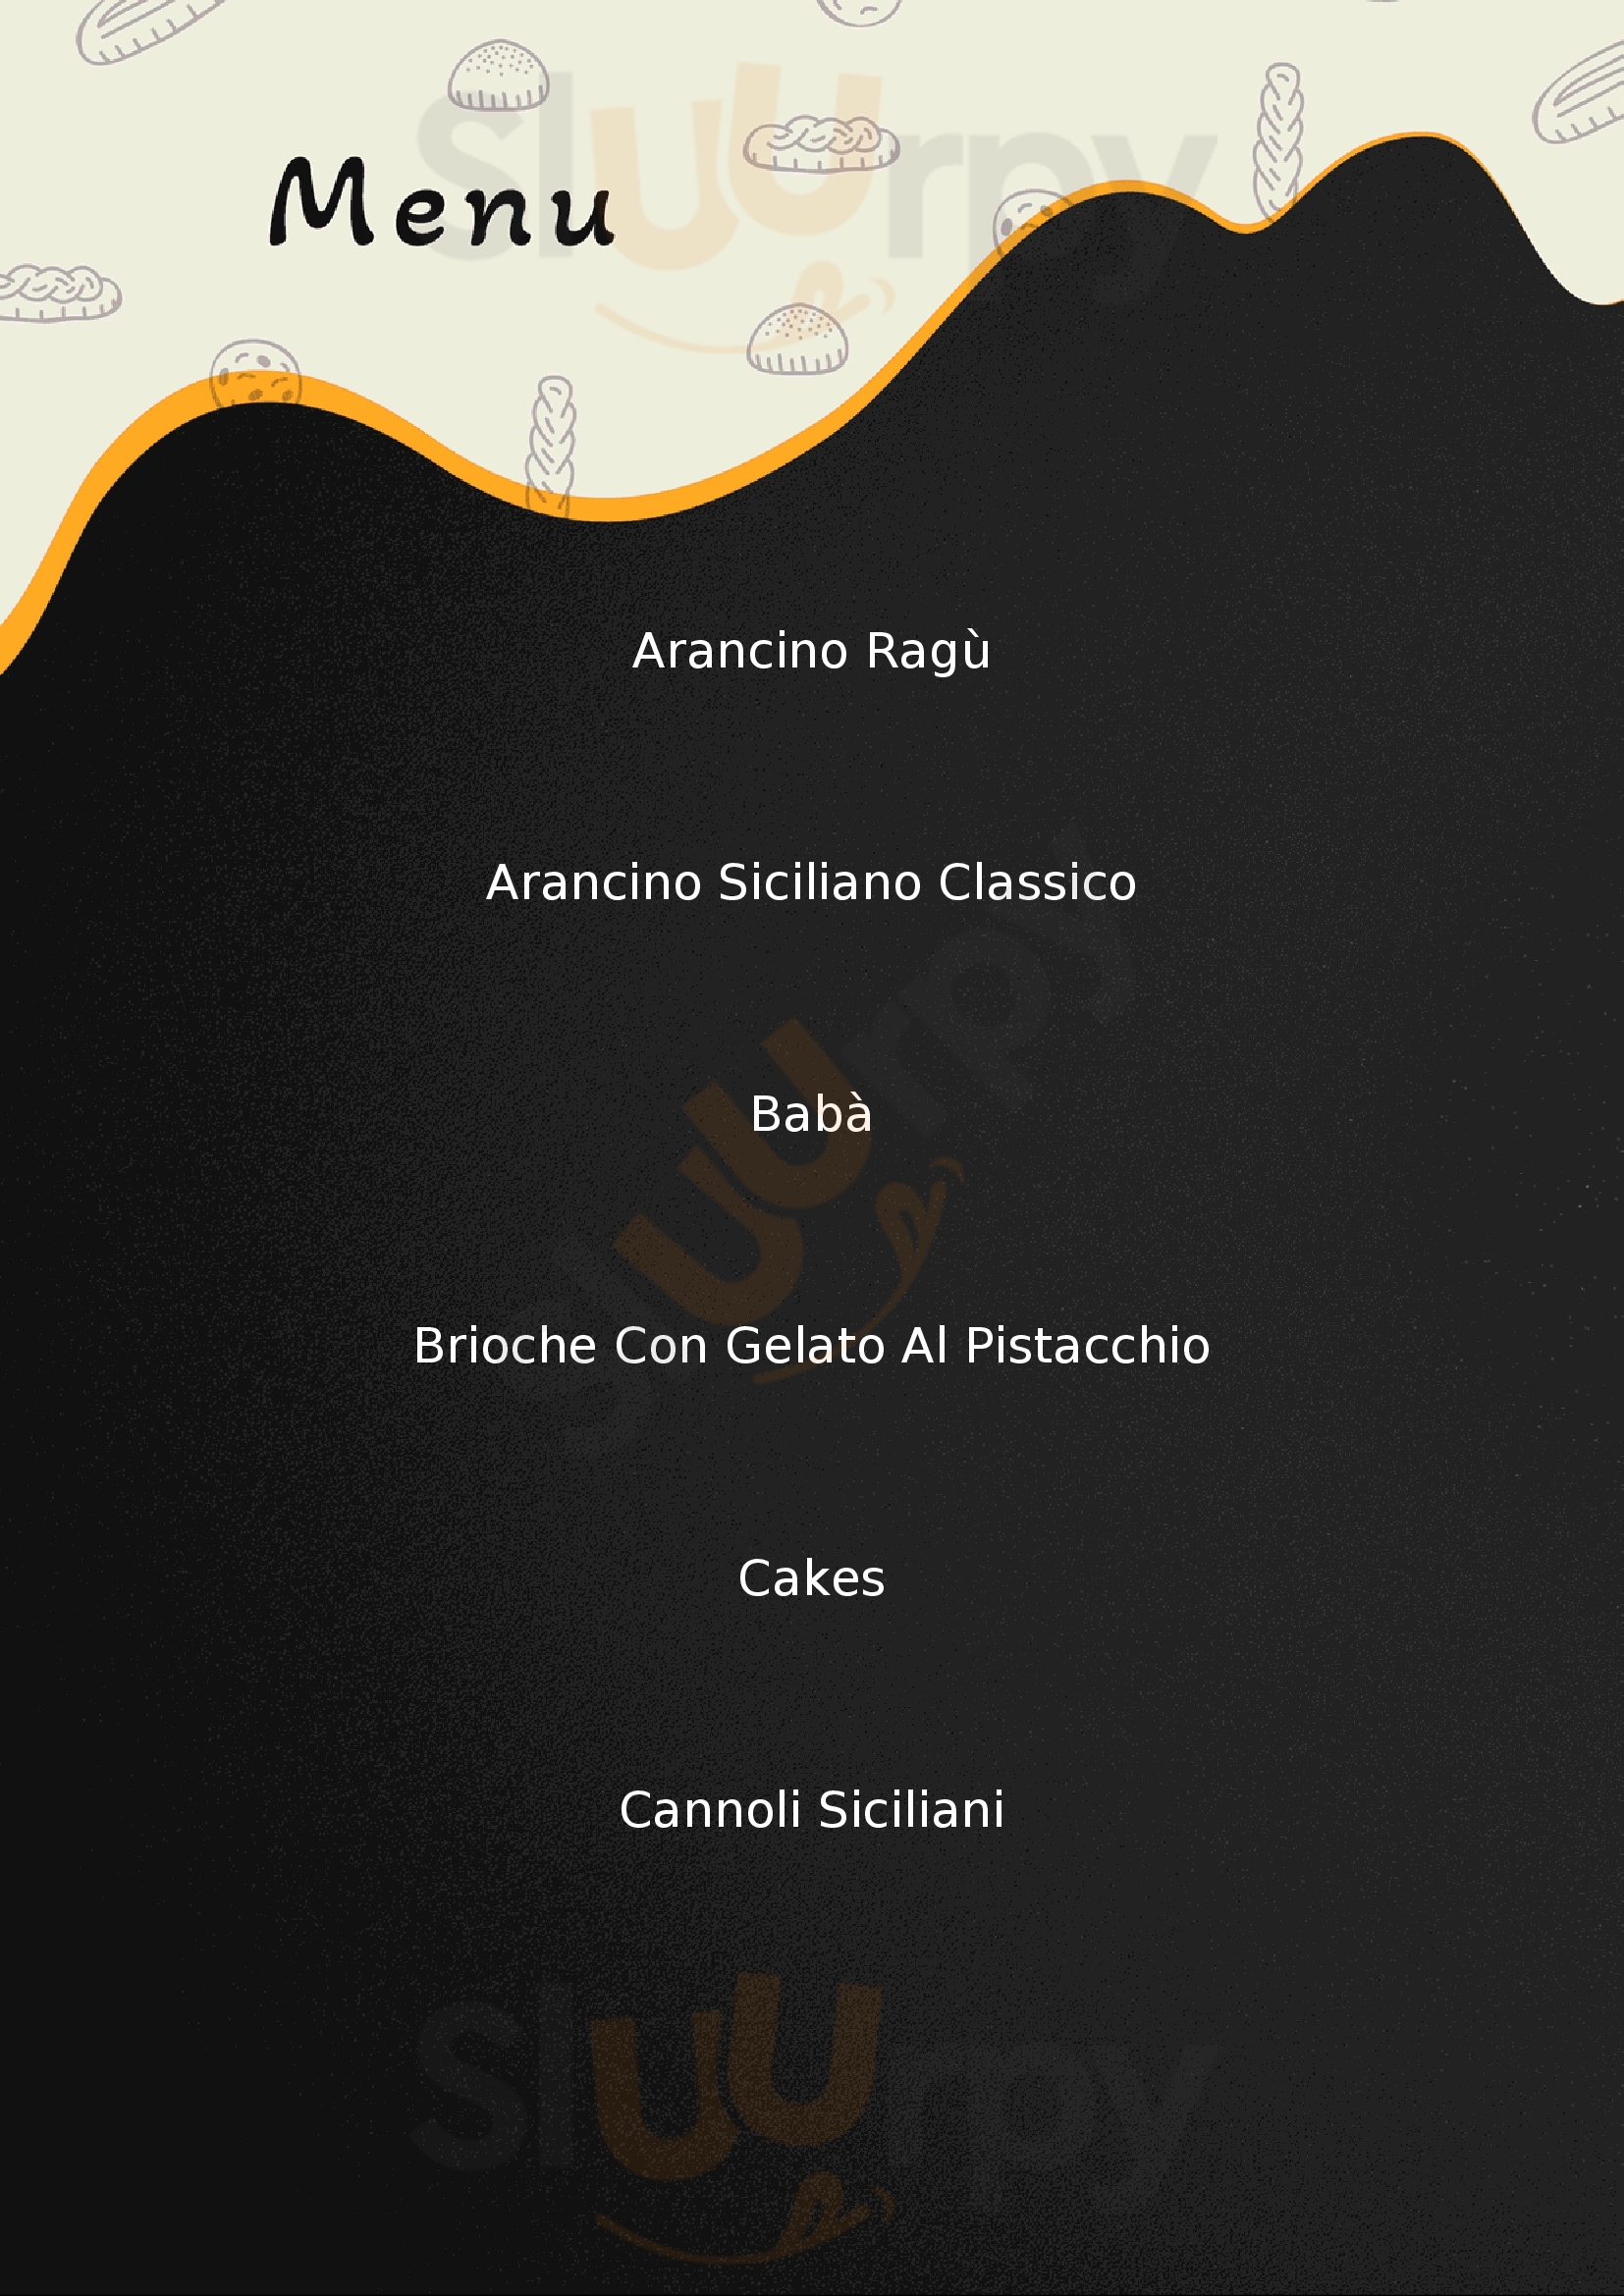 La Cannoleria Siciliana Roma menù 1 pagina